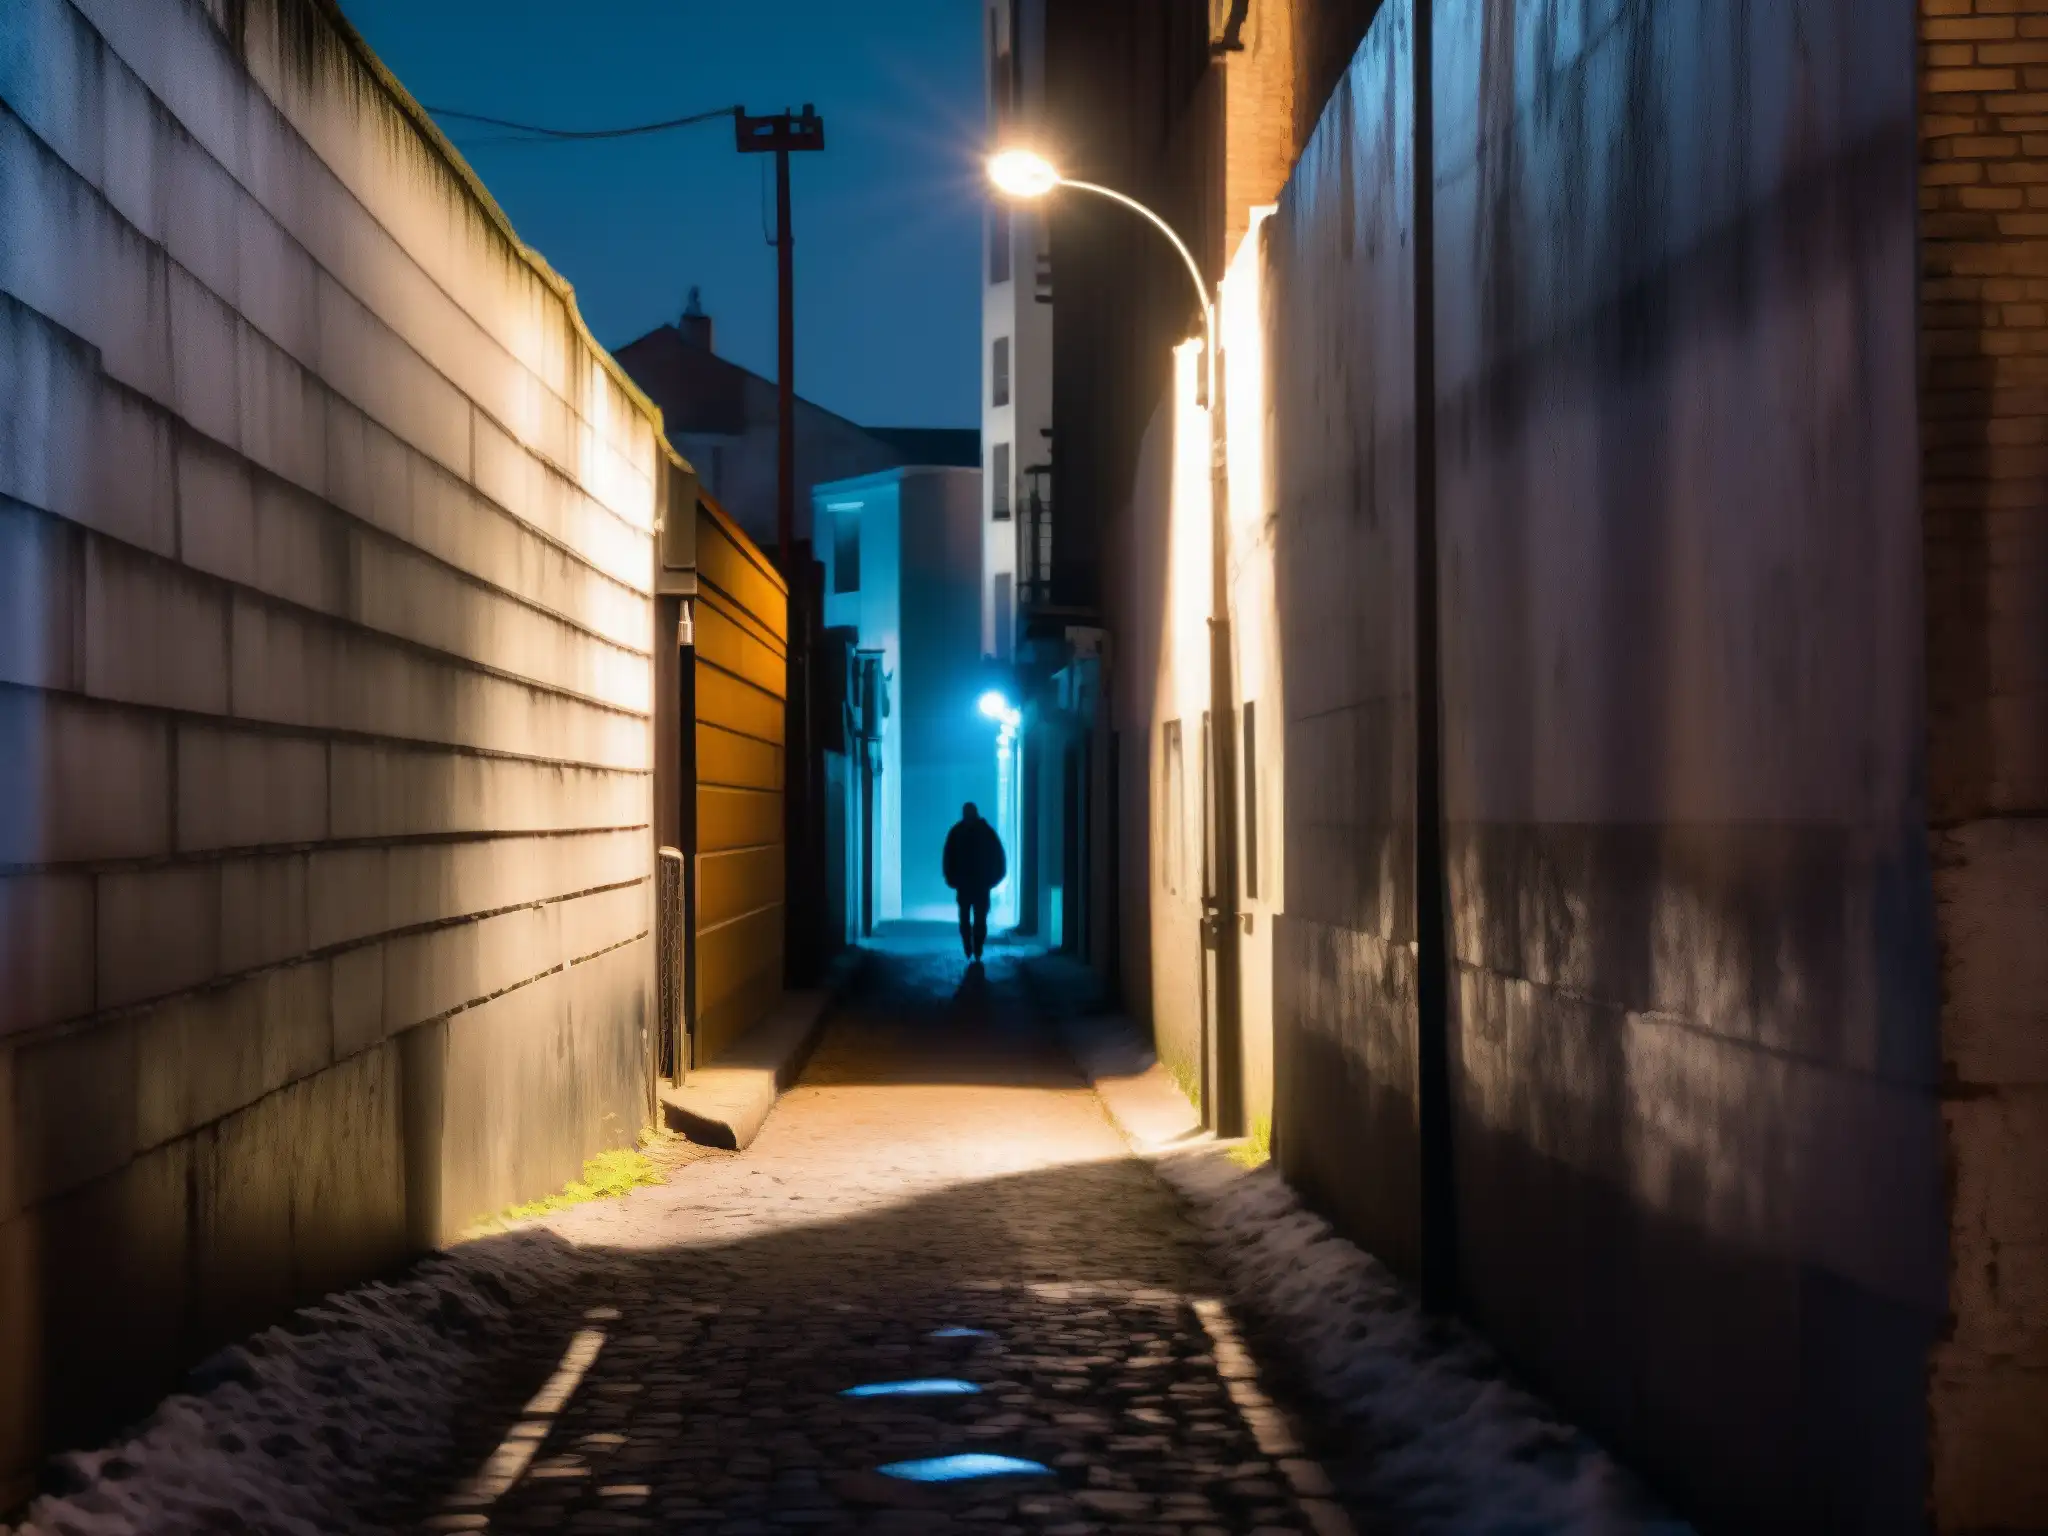 Un callejón sombrío y misterioso con grafitis, una figura solitaria y una luz fantasmal, capturando la evolución de las leyendas urbanas